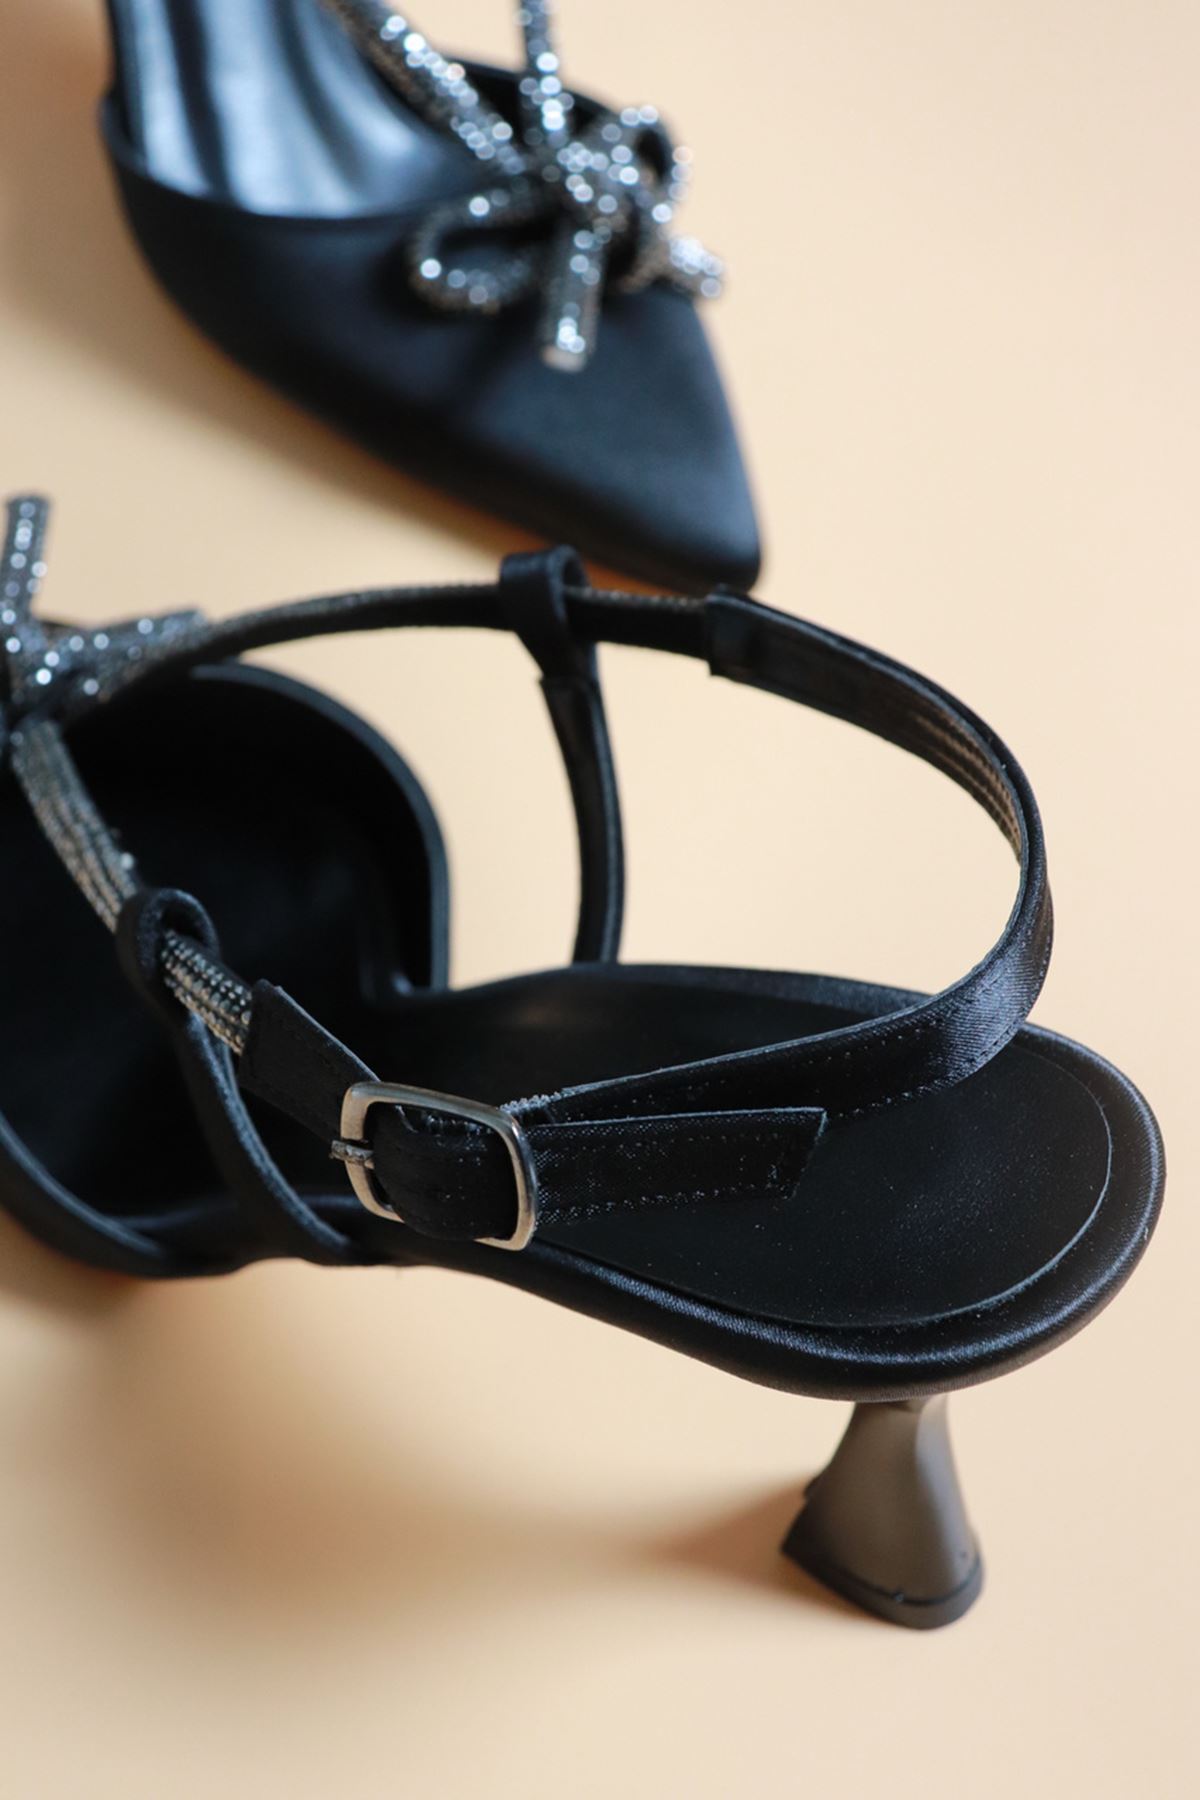 Trendayakkabı -Siyah Saten Fiyonk Detaylı Kadın Topuklu Ayakkabı 